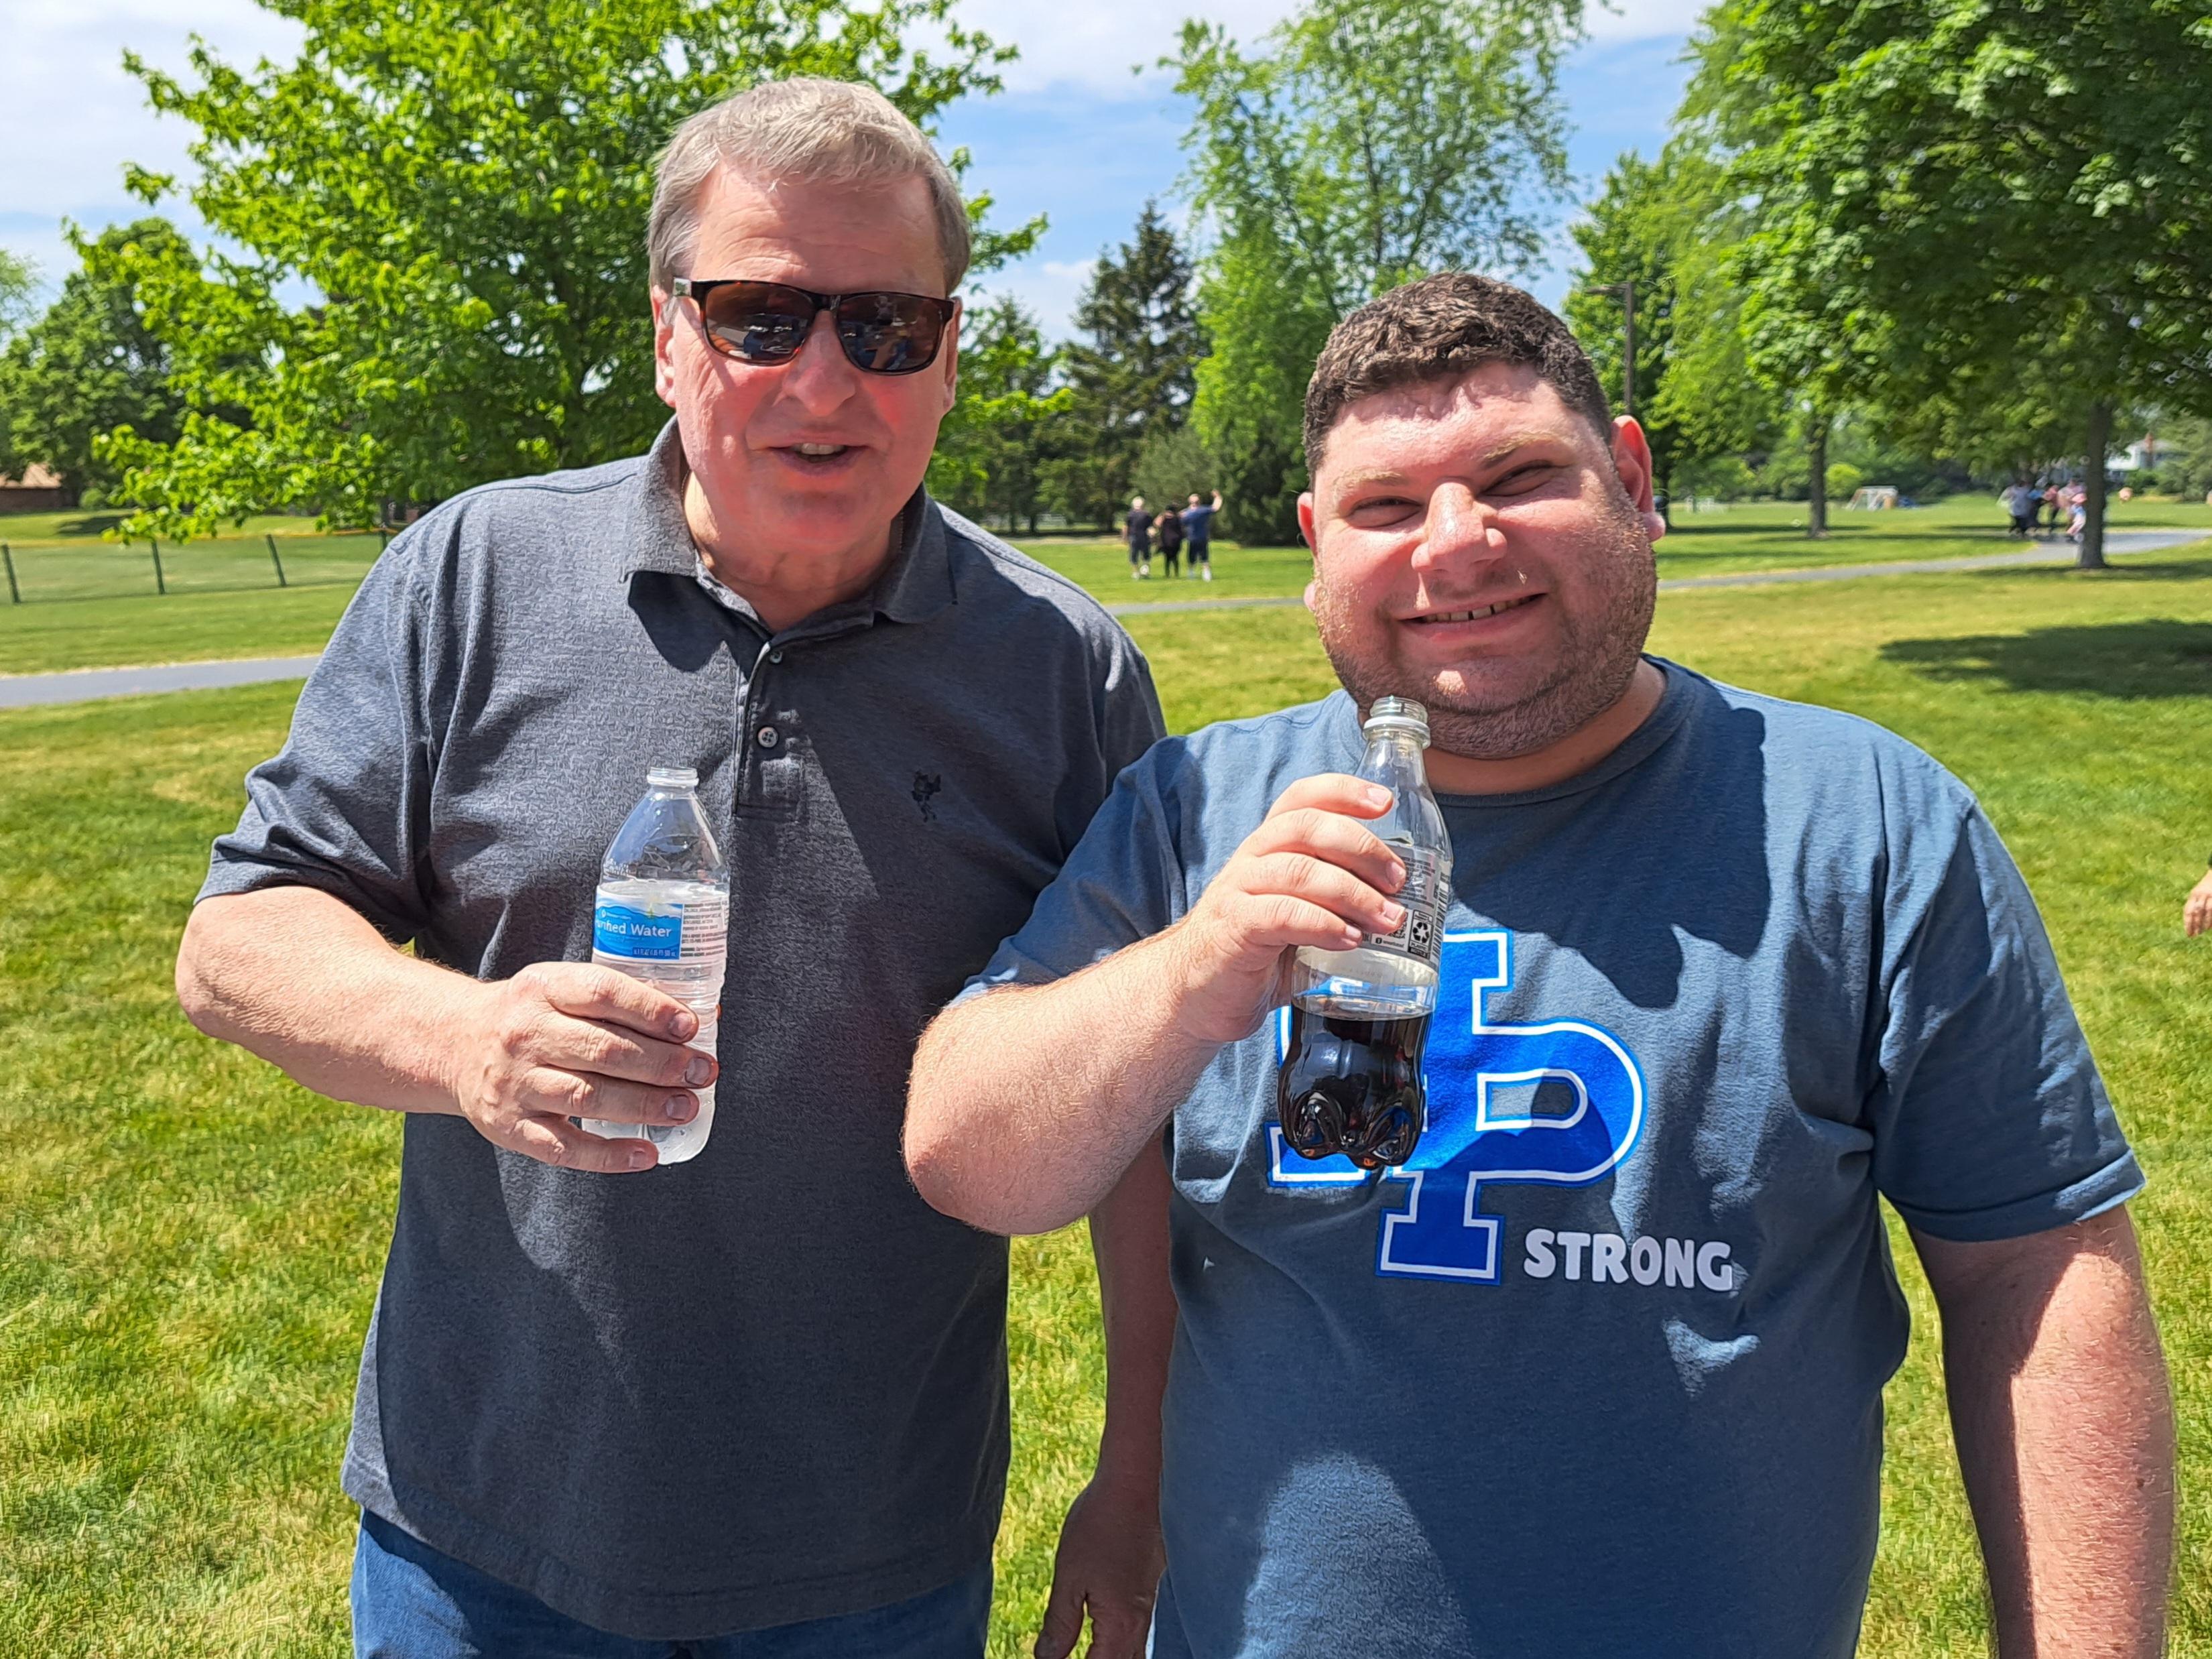 two men holding bottles of soda